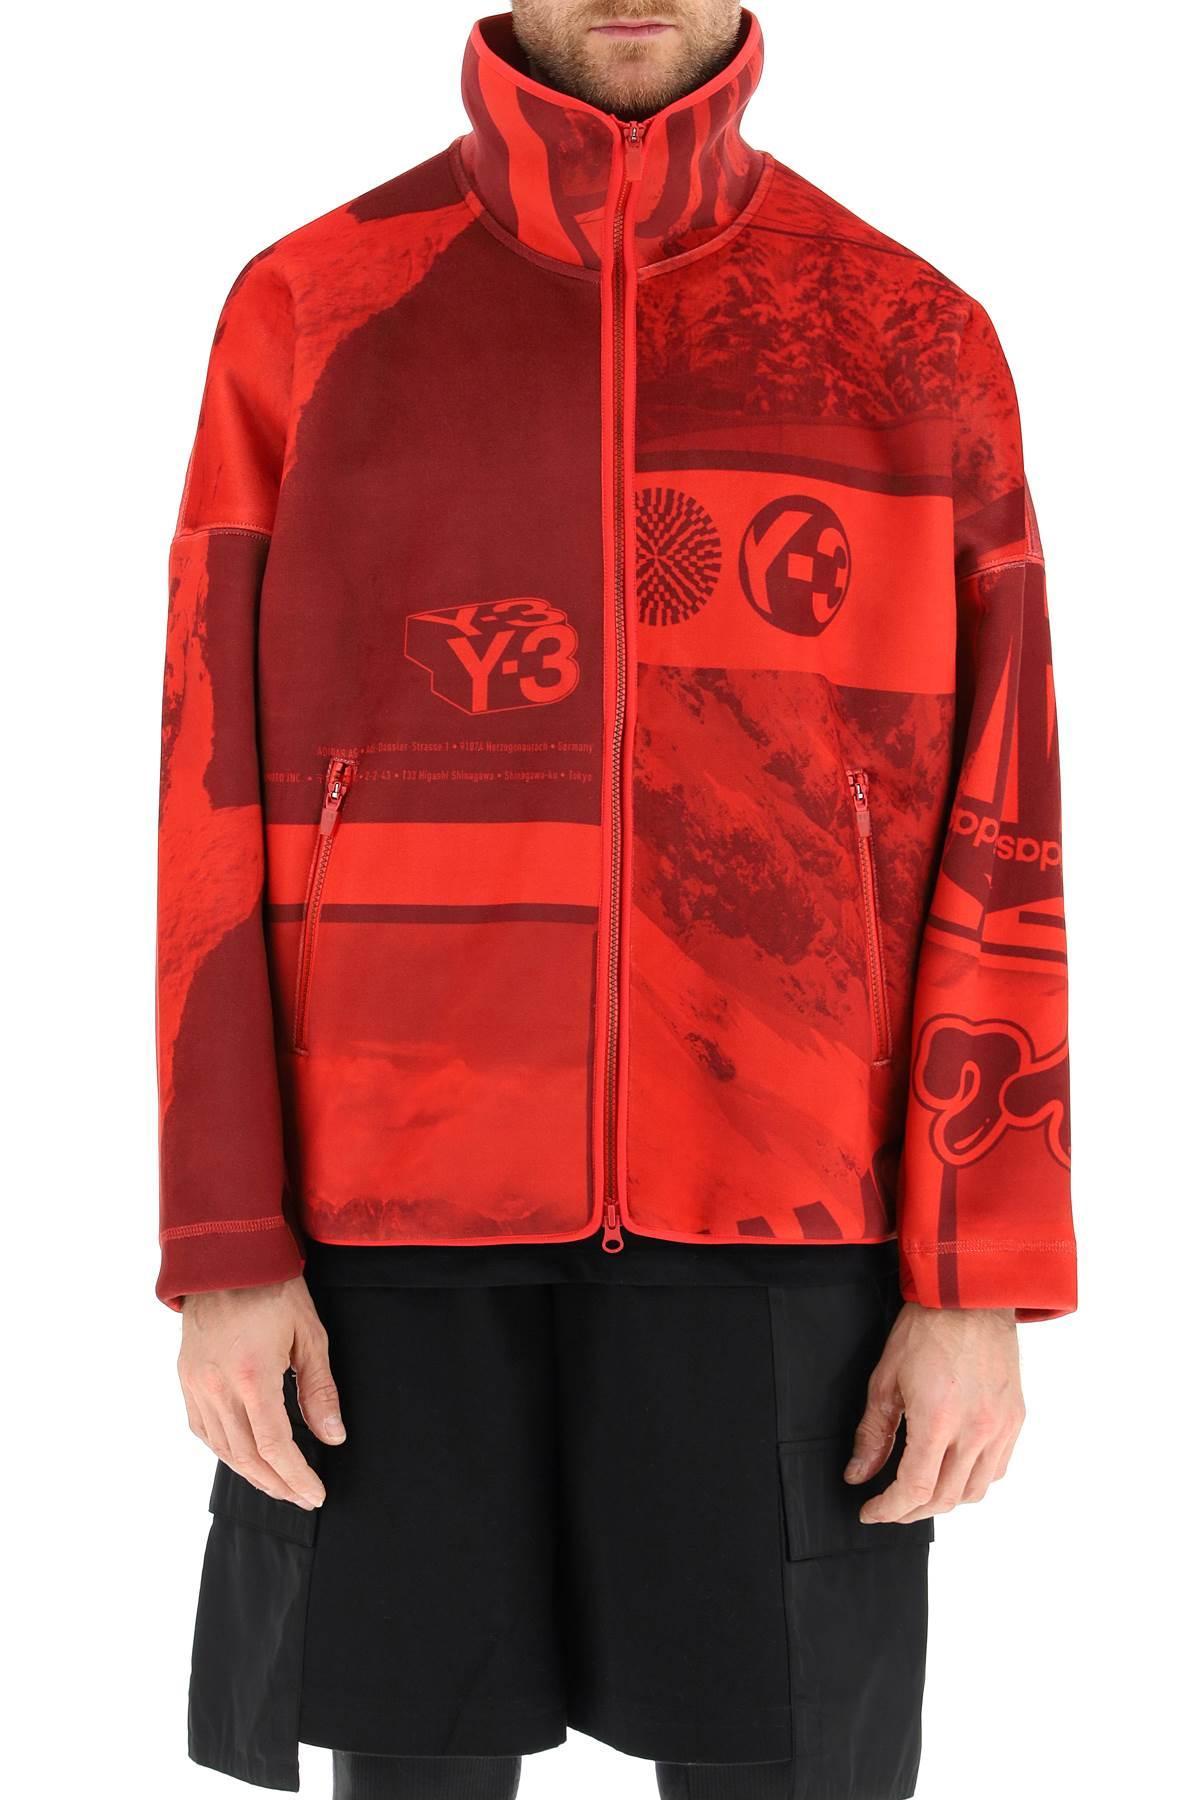 Y-3 Velvet Spacer Zine Full Zip Sweatshirt in Red for Men - Save 